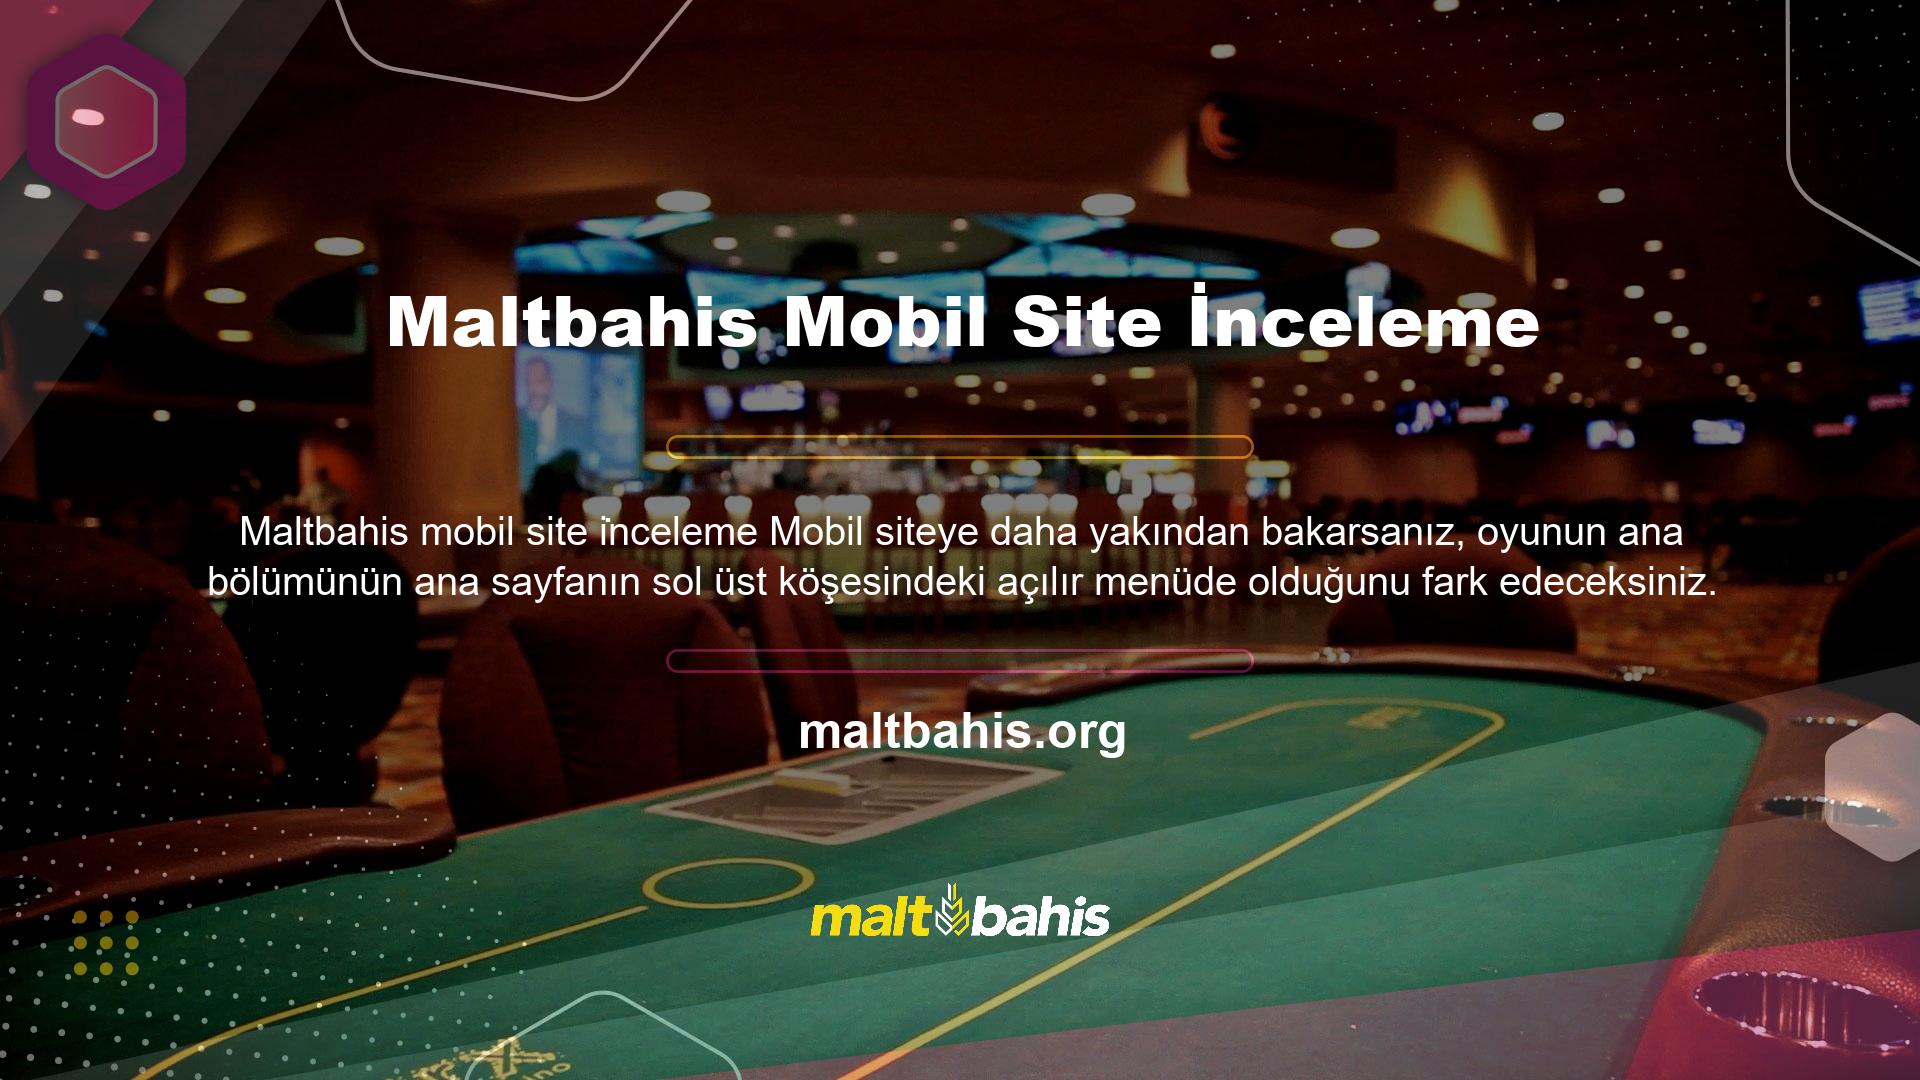 Maltbahis mobil site ana sayfasının sağ üst köşesinde Türkçe, İngilizce, Almanca ve Fransızca dillerini destekleyen hızlı eşleştirme çubuğu bulunmaktadır